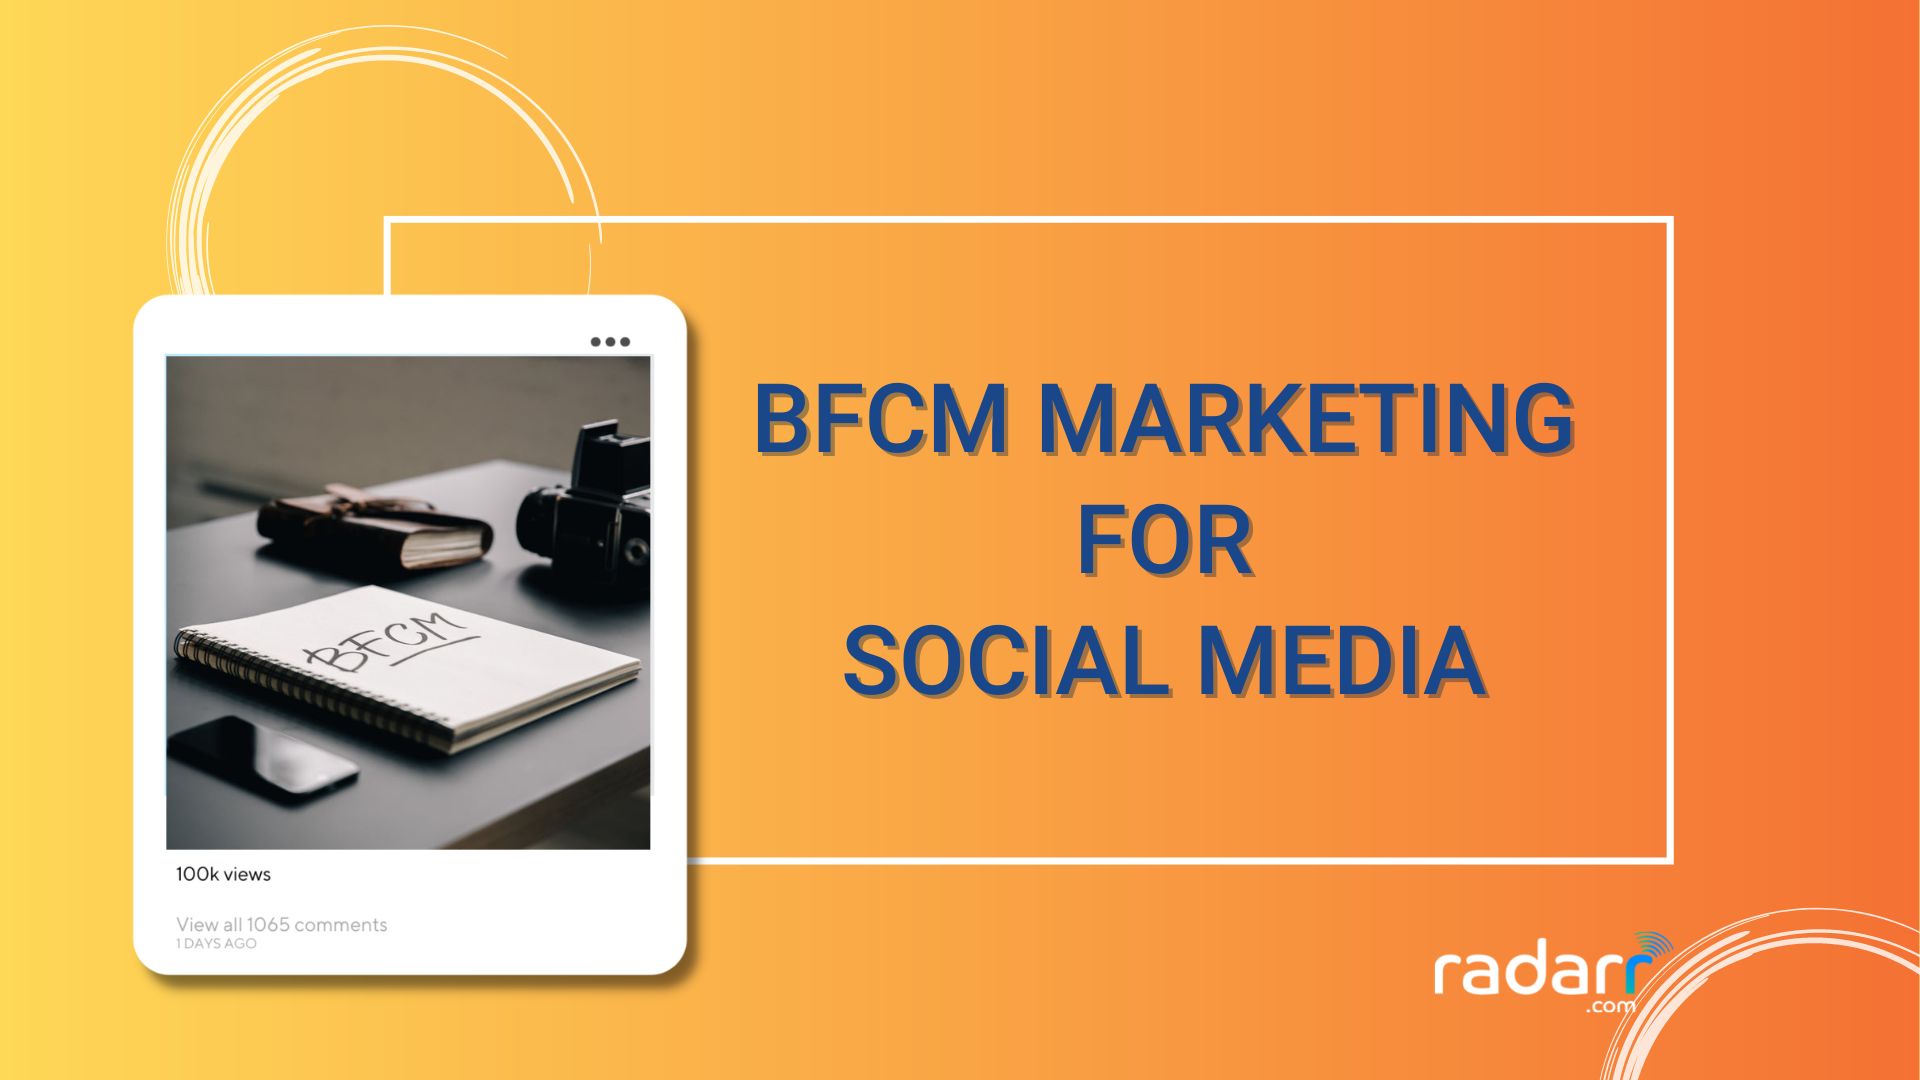 bfcm marketing on social media